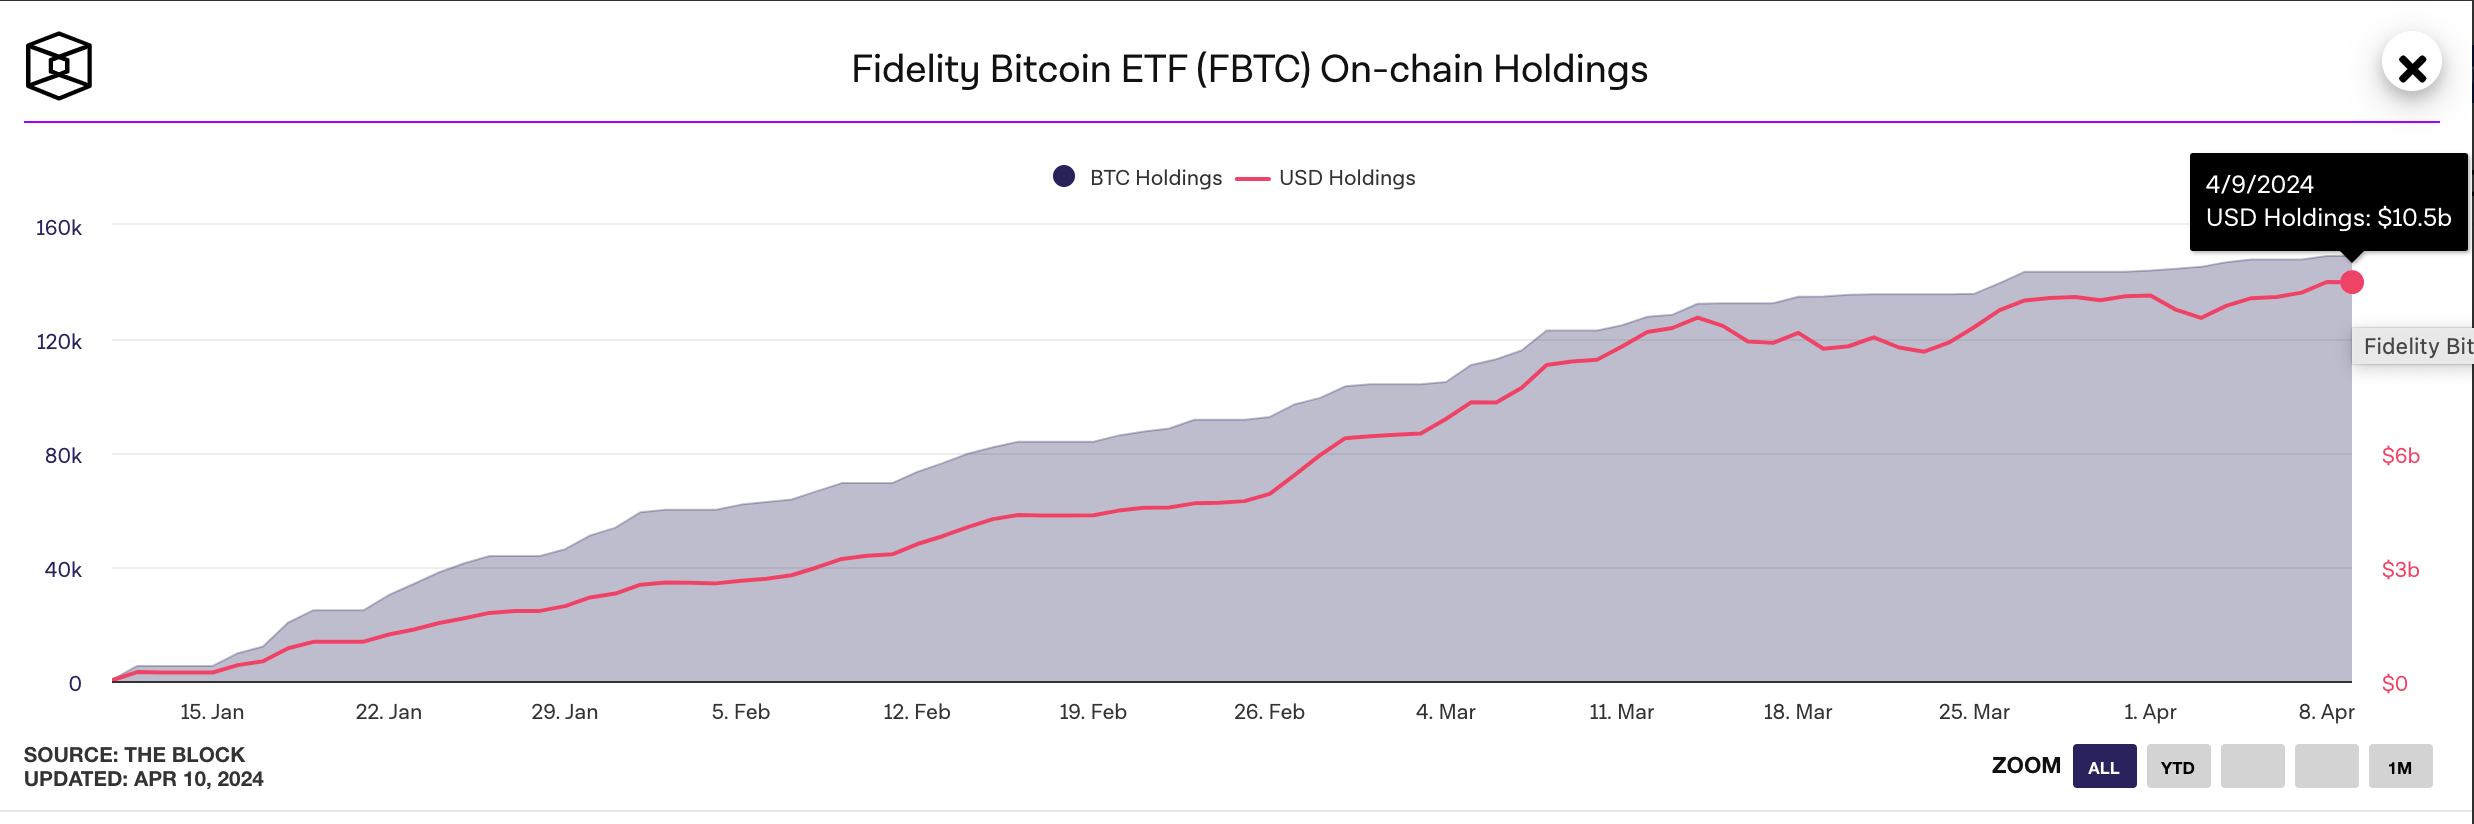 Fidelity (FBTC) ETF Hit 150,000 BTC ($10.5 billion) AUM | Source: TheBloc